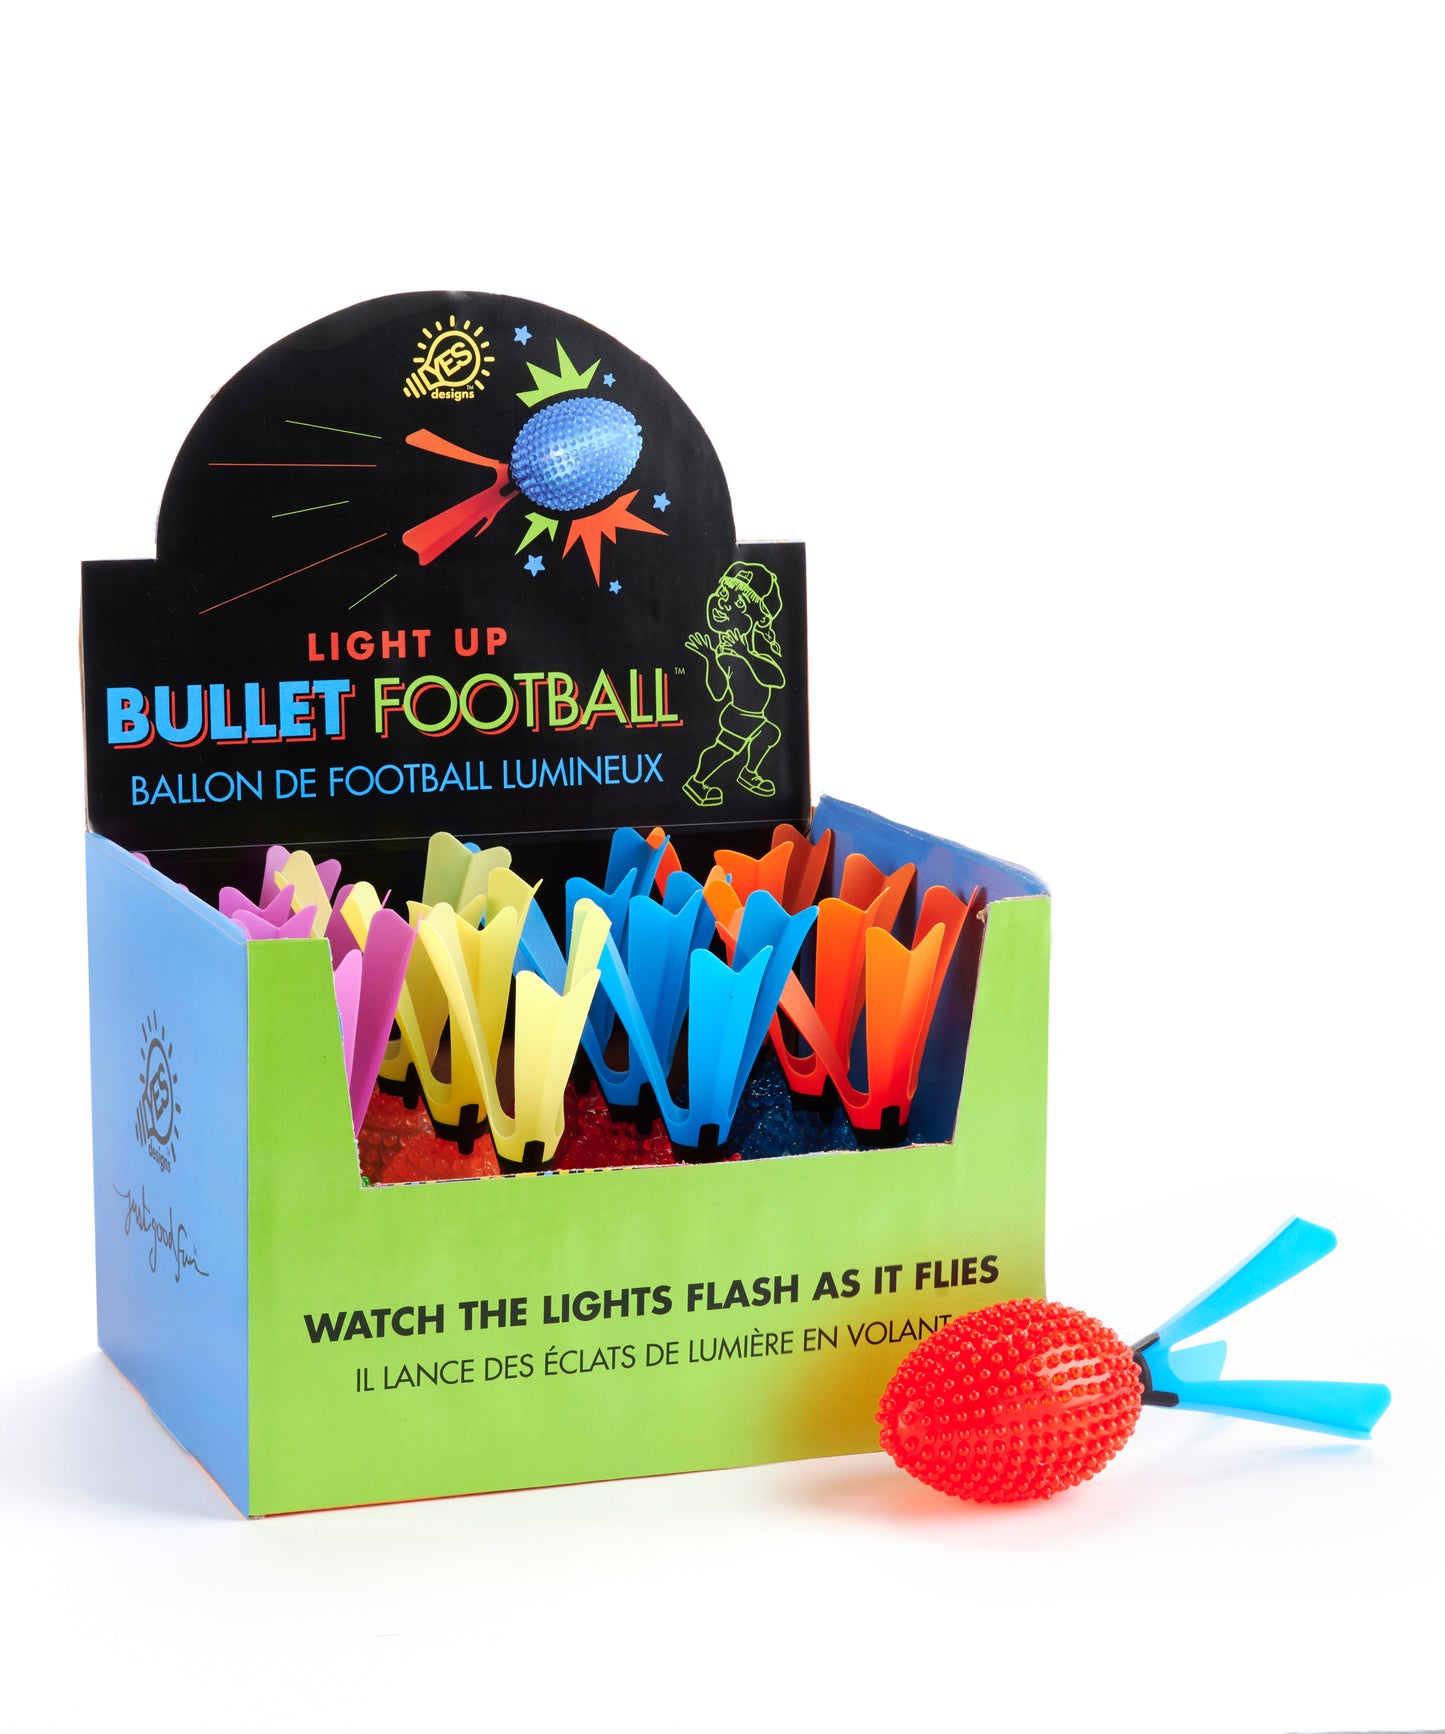 Light Bullet Football